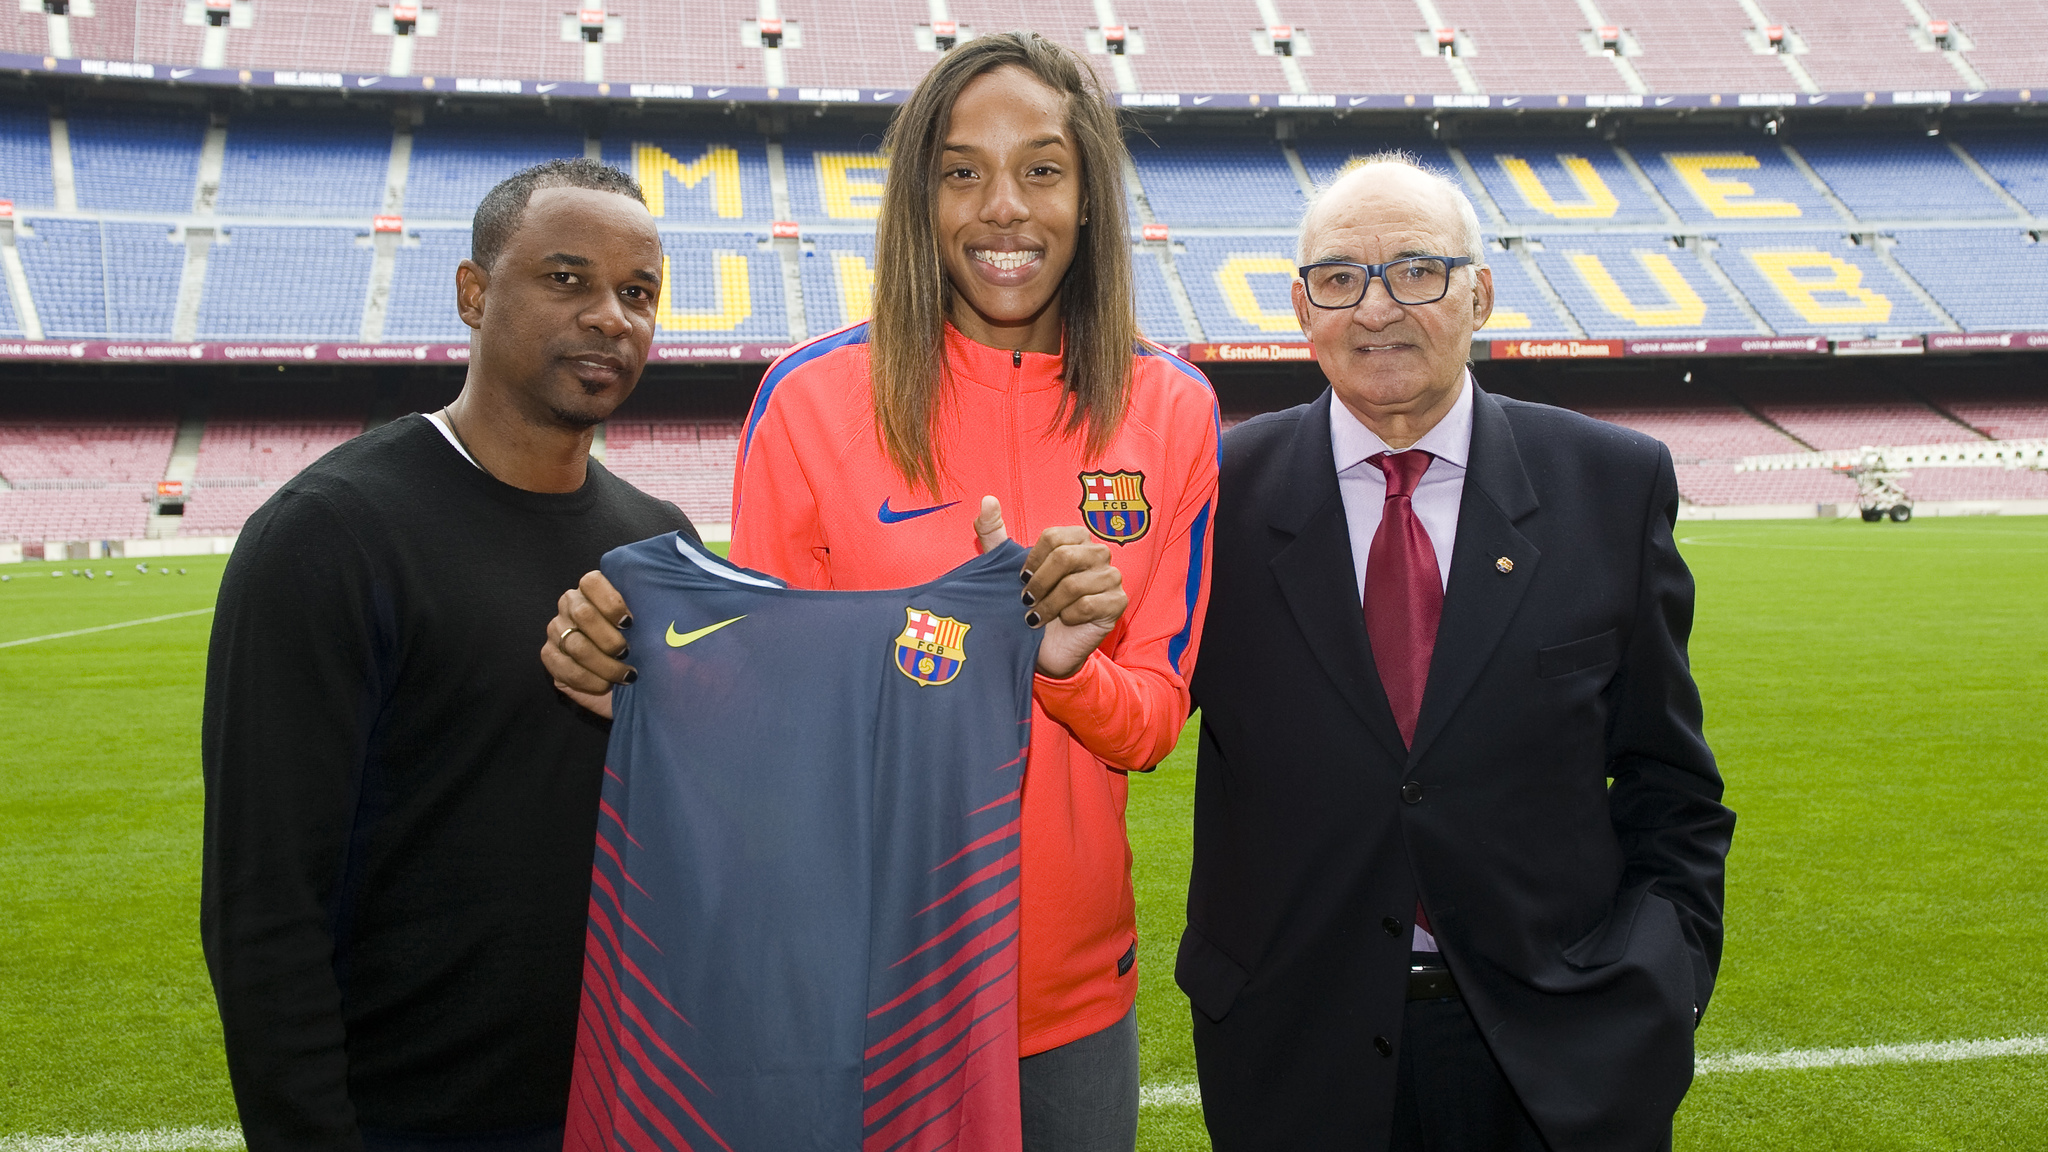 Yulimar Rojas el da que se oficializ su fichaje por el FC Barcelona. A su izquierda, su entrenador  Ivn Pedroso, y a su derecha, Vicente Egido, responsable de la seccin de atletismo del club.